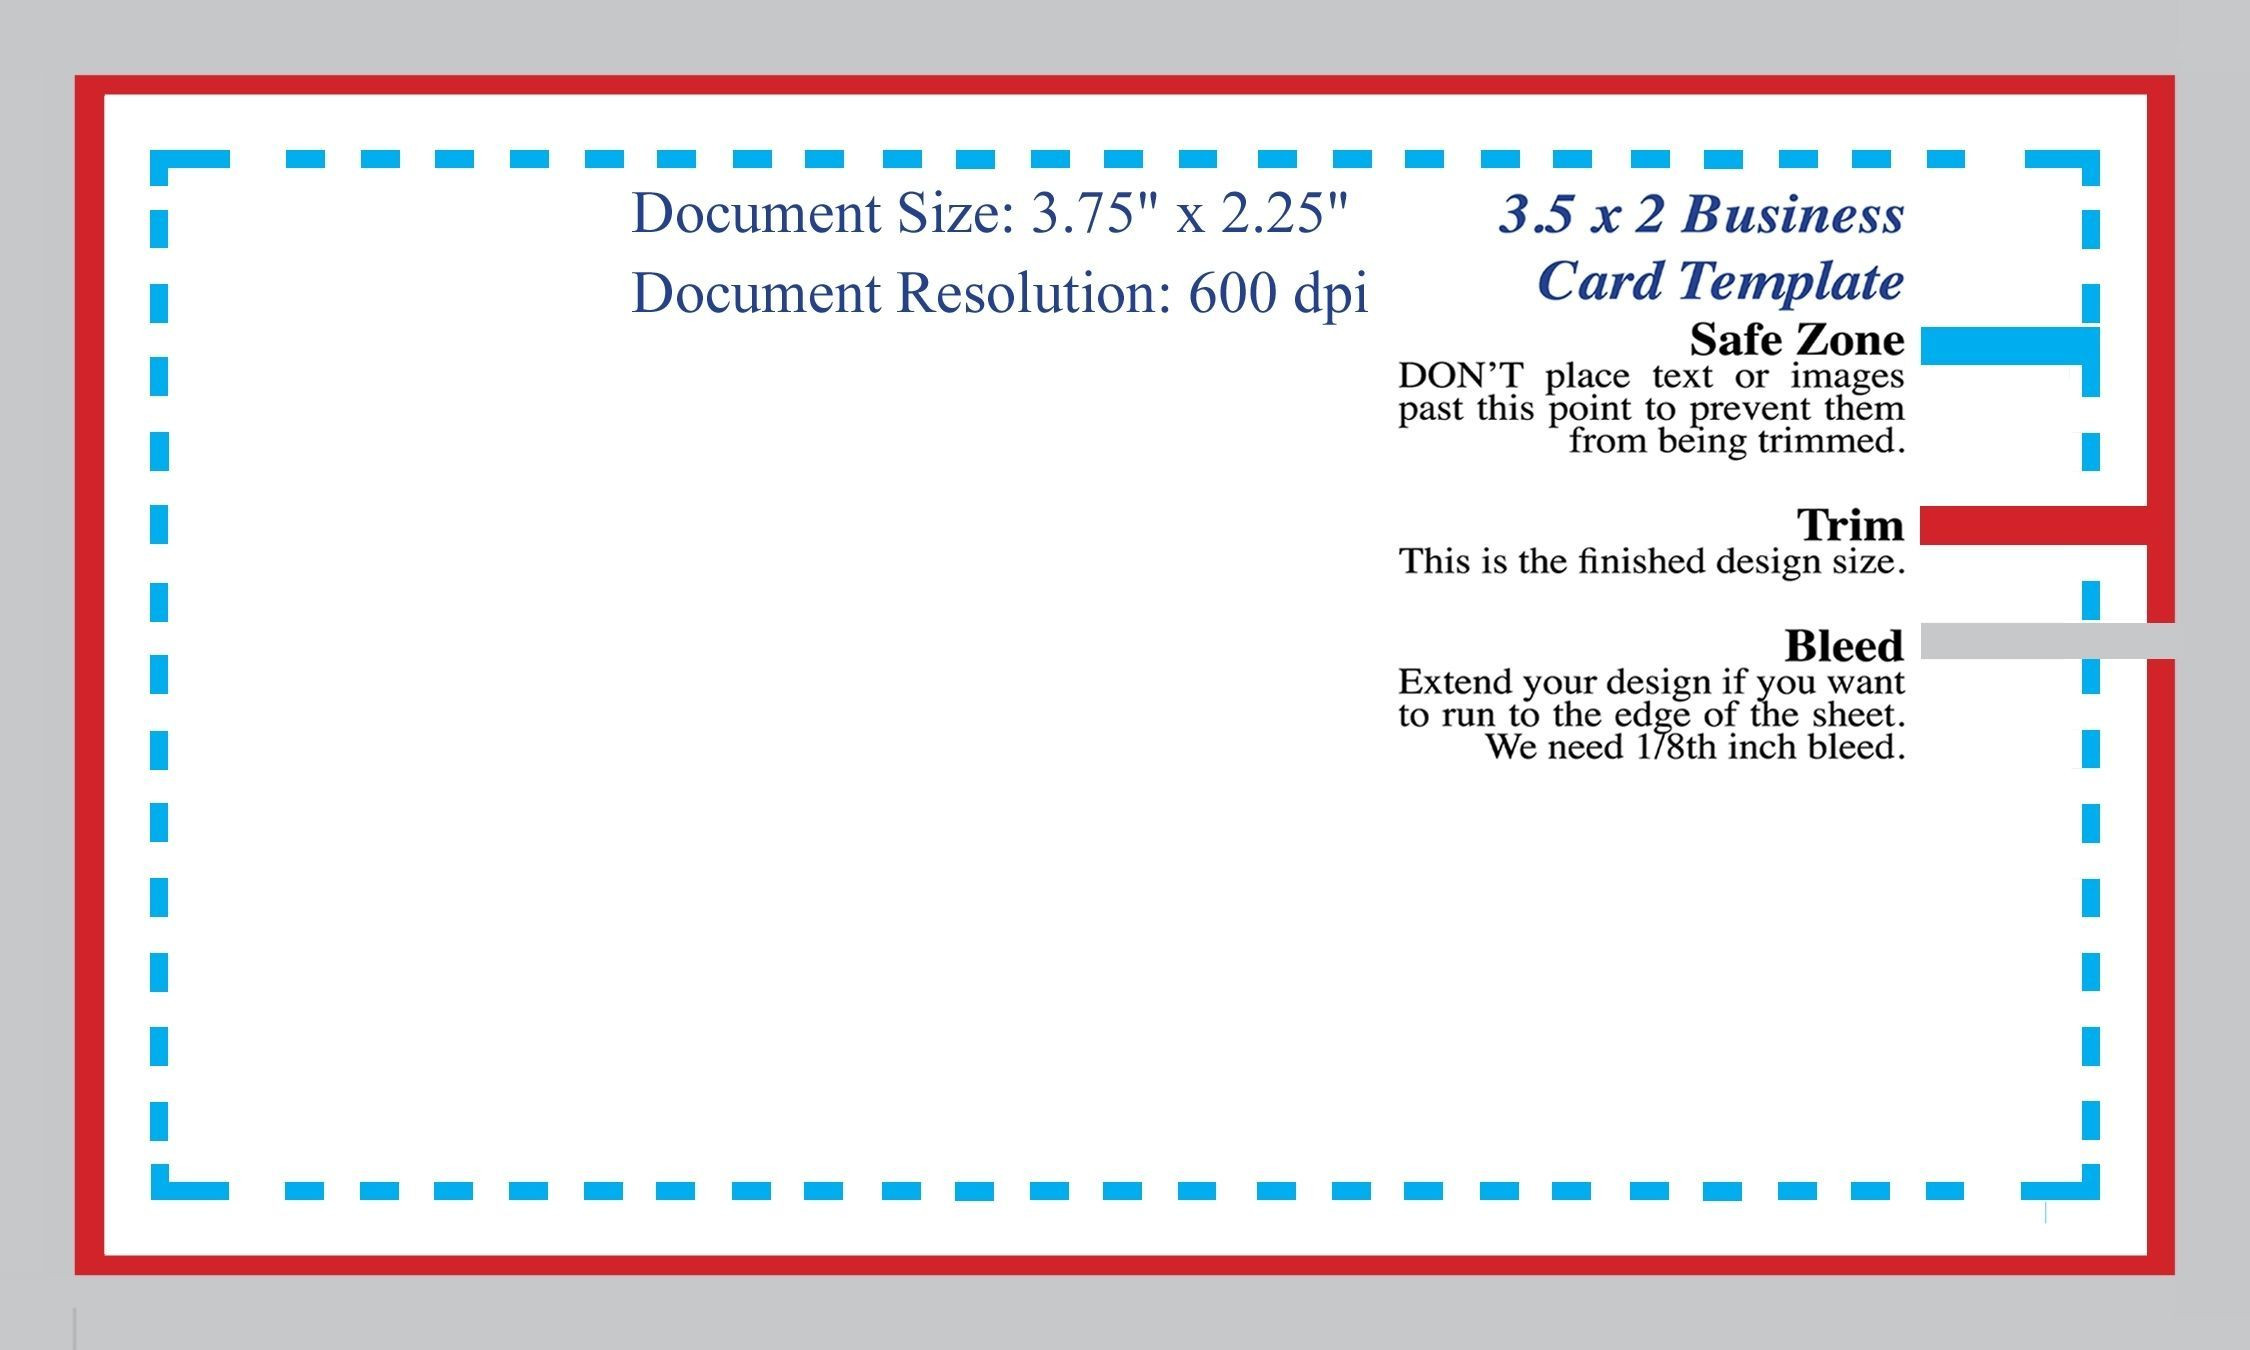 Standard Business Card Blank Template Shop Template Of Business Card Size Photoshop Template